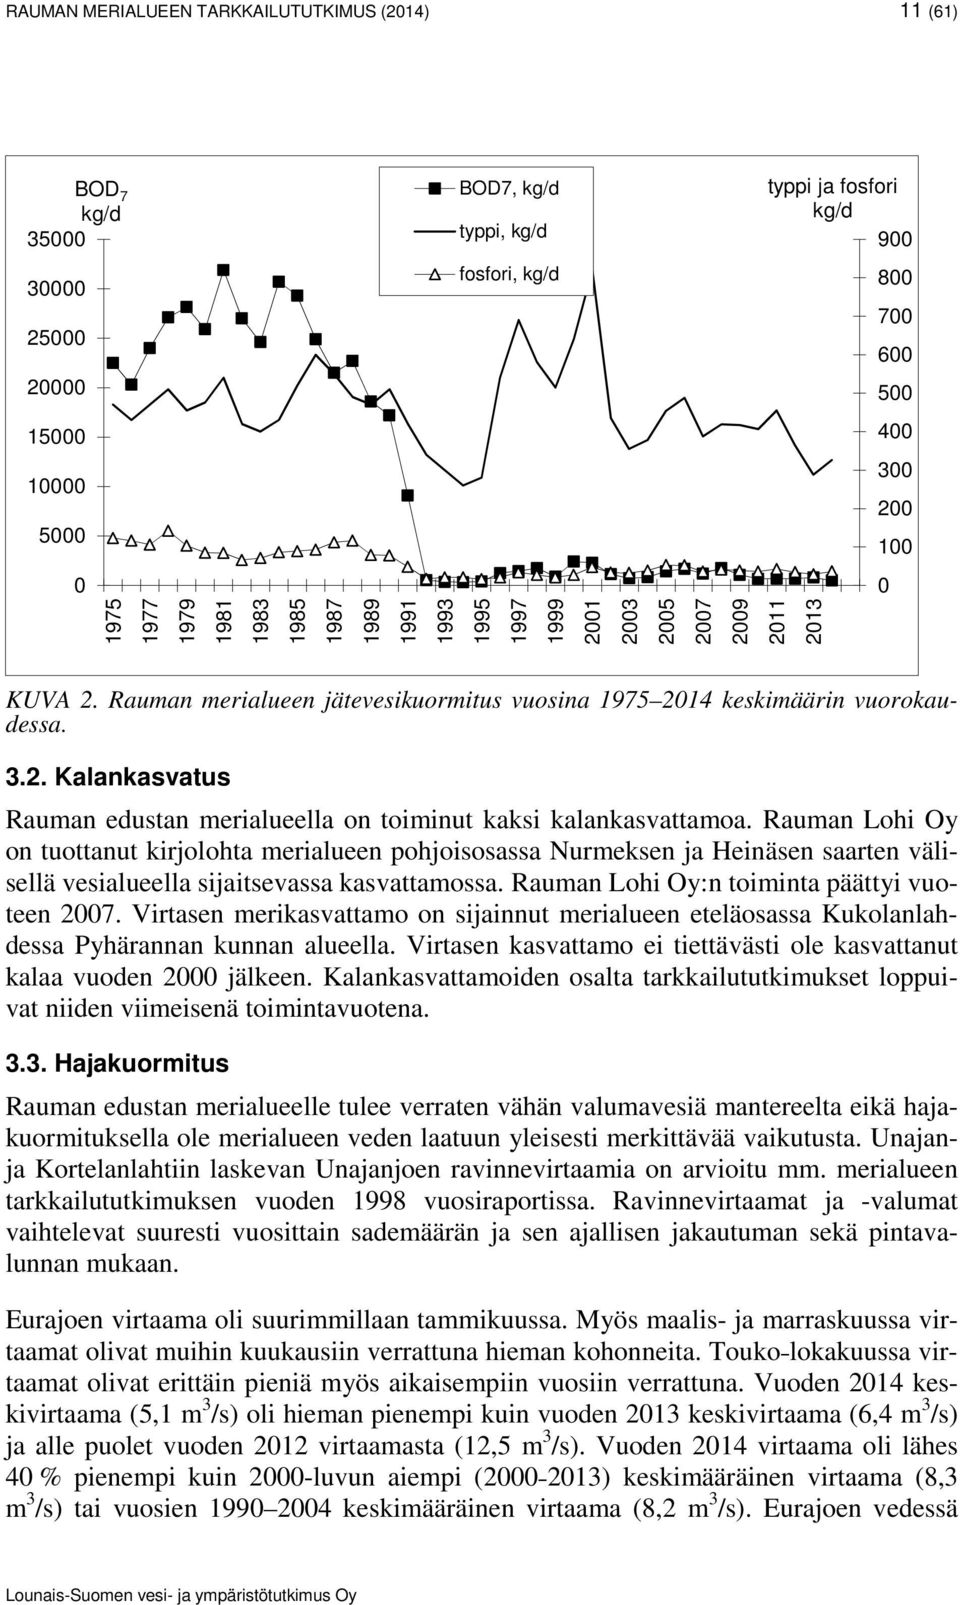 2001 2003 2005 2007 2009 2011 2013 KUVA 2. Rauman merialueen jätevesikuormitus vuosina 1975 2014 keskimäärin vuorokaudessa. 3.2. Kalankasvatus Rauman edustan merialueella on toiminut kaksi kalankasvattamoa.